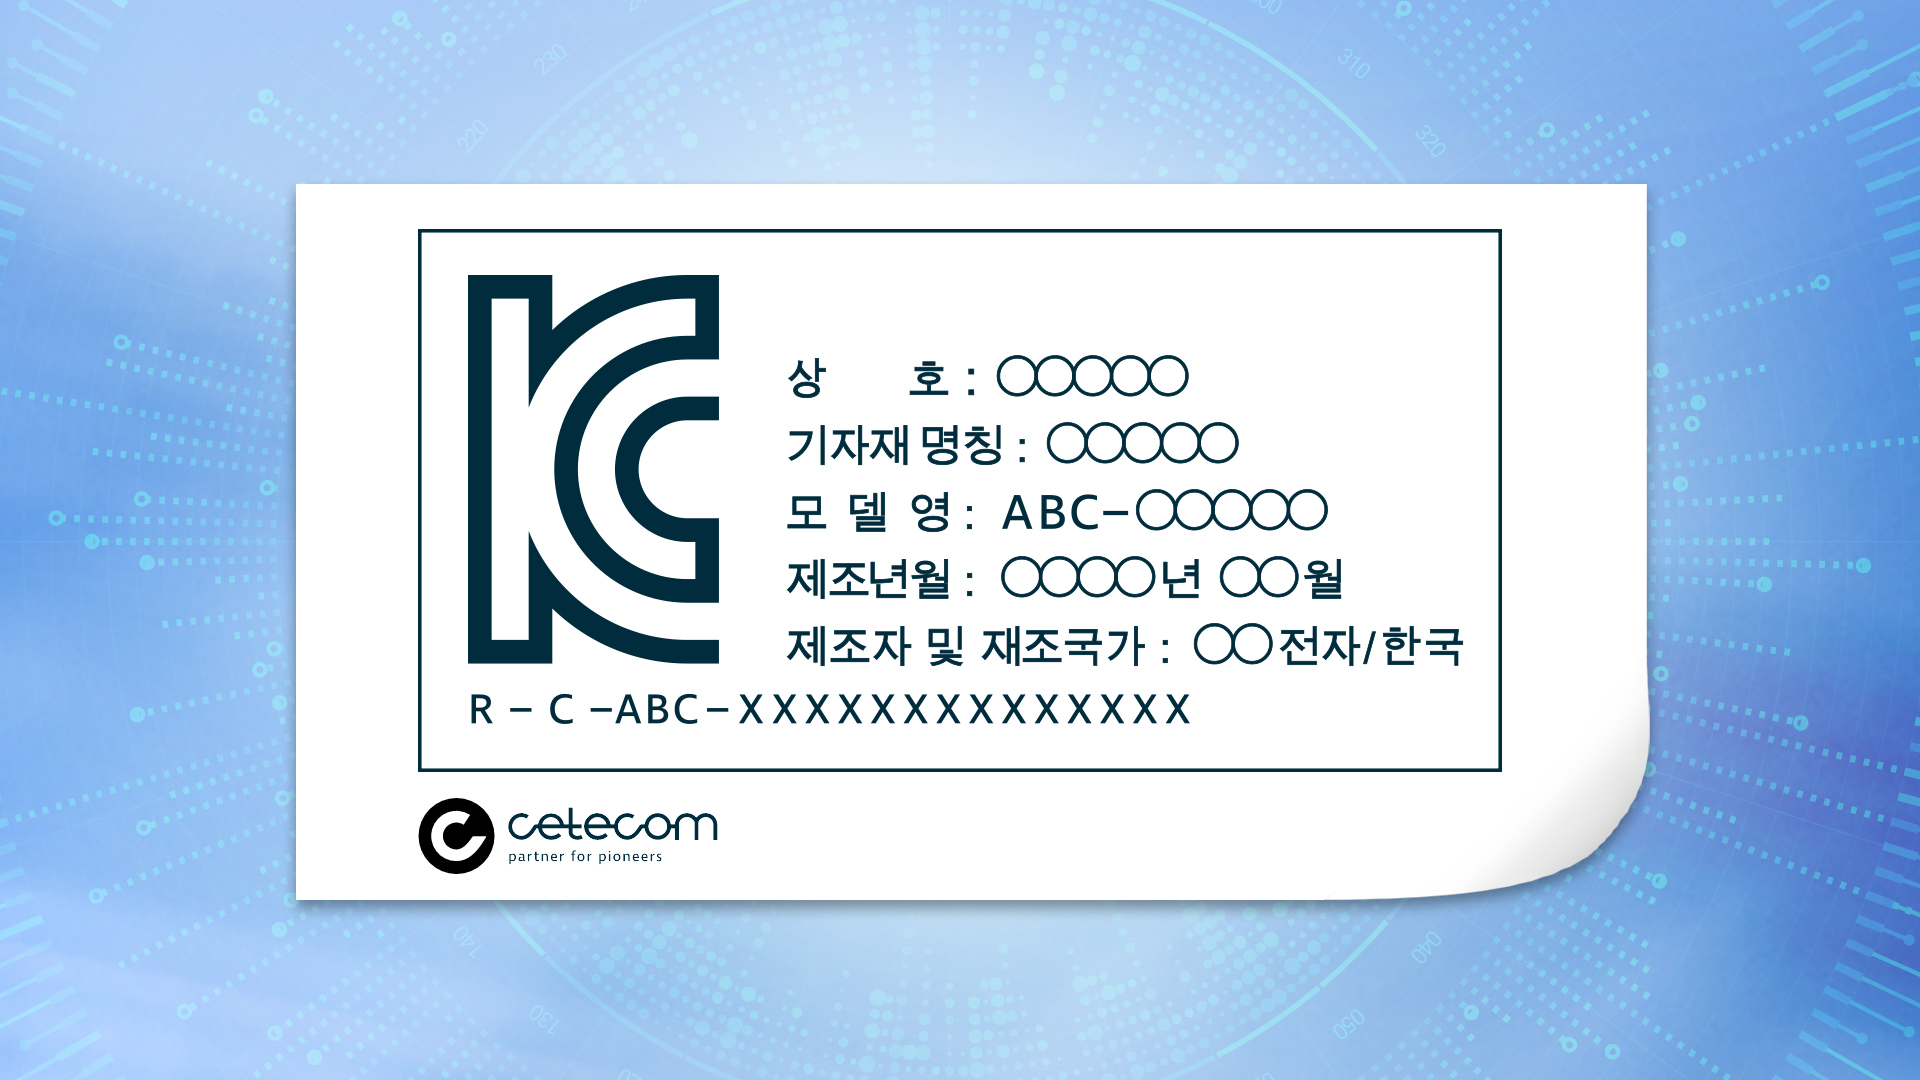 Ein KC-Zertifizierungslabel, auf dem sowohl das KC Logo als auch das cetecom advanced Logo zu erkennen sind